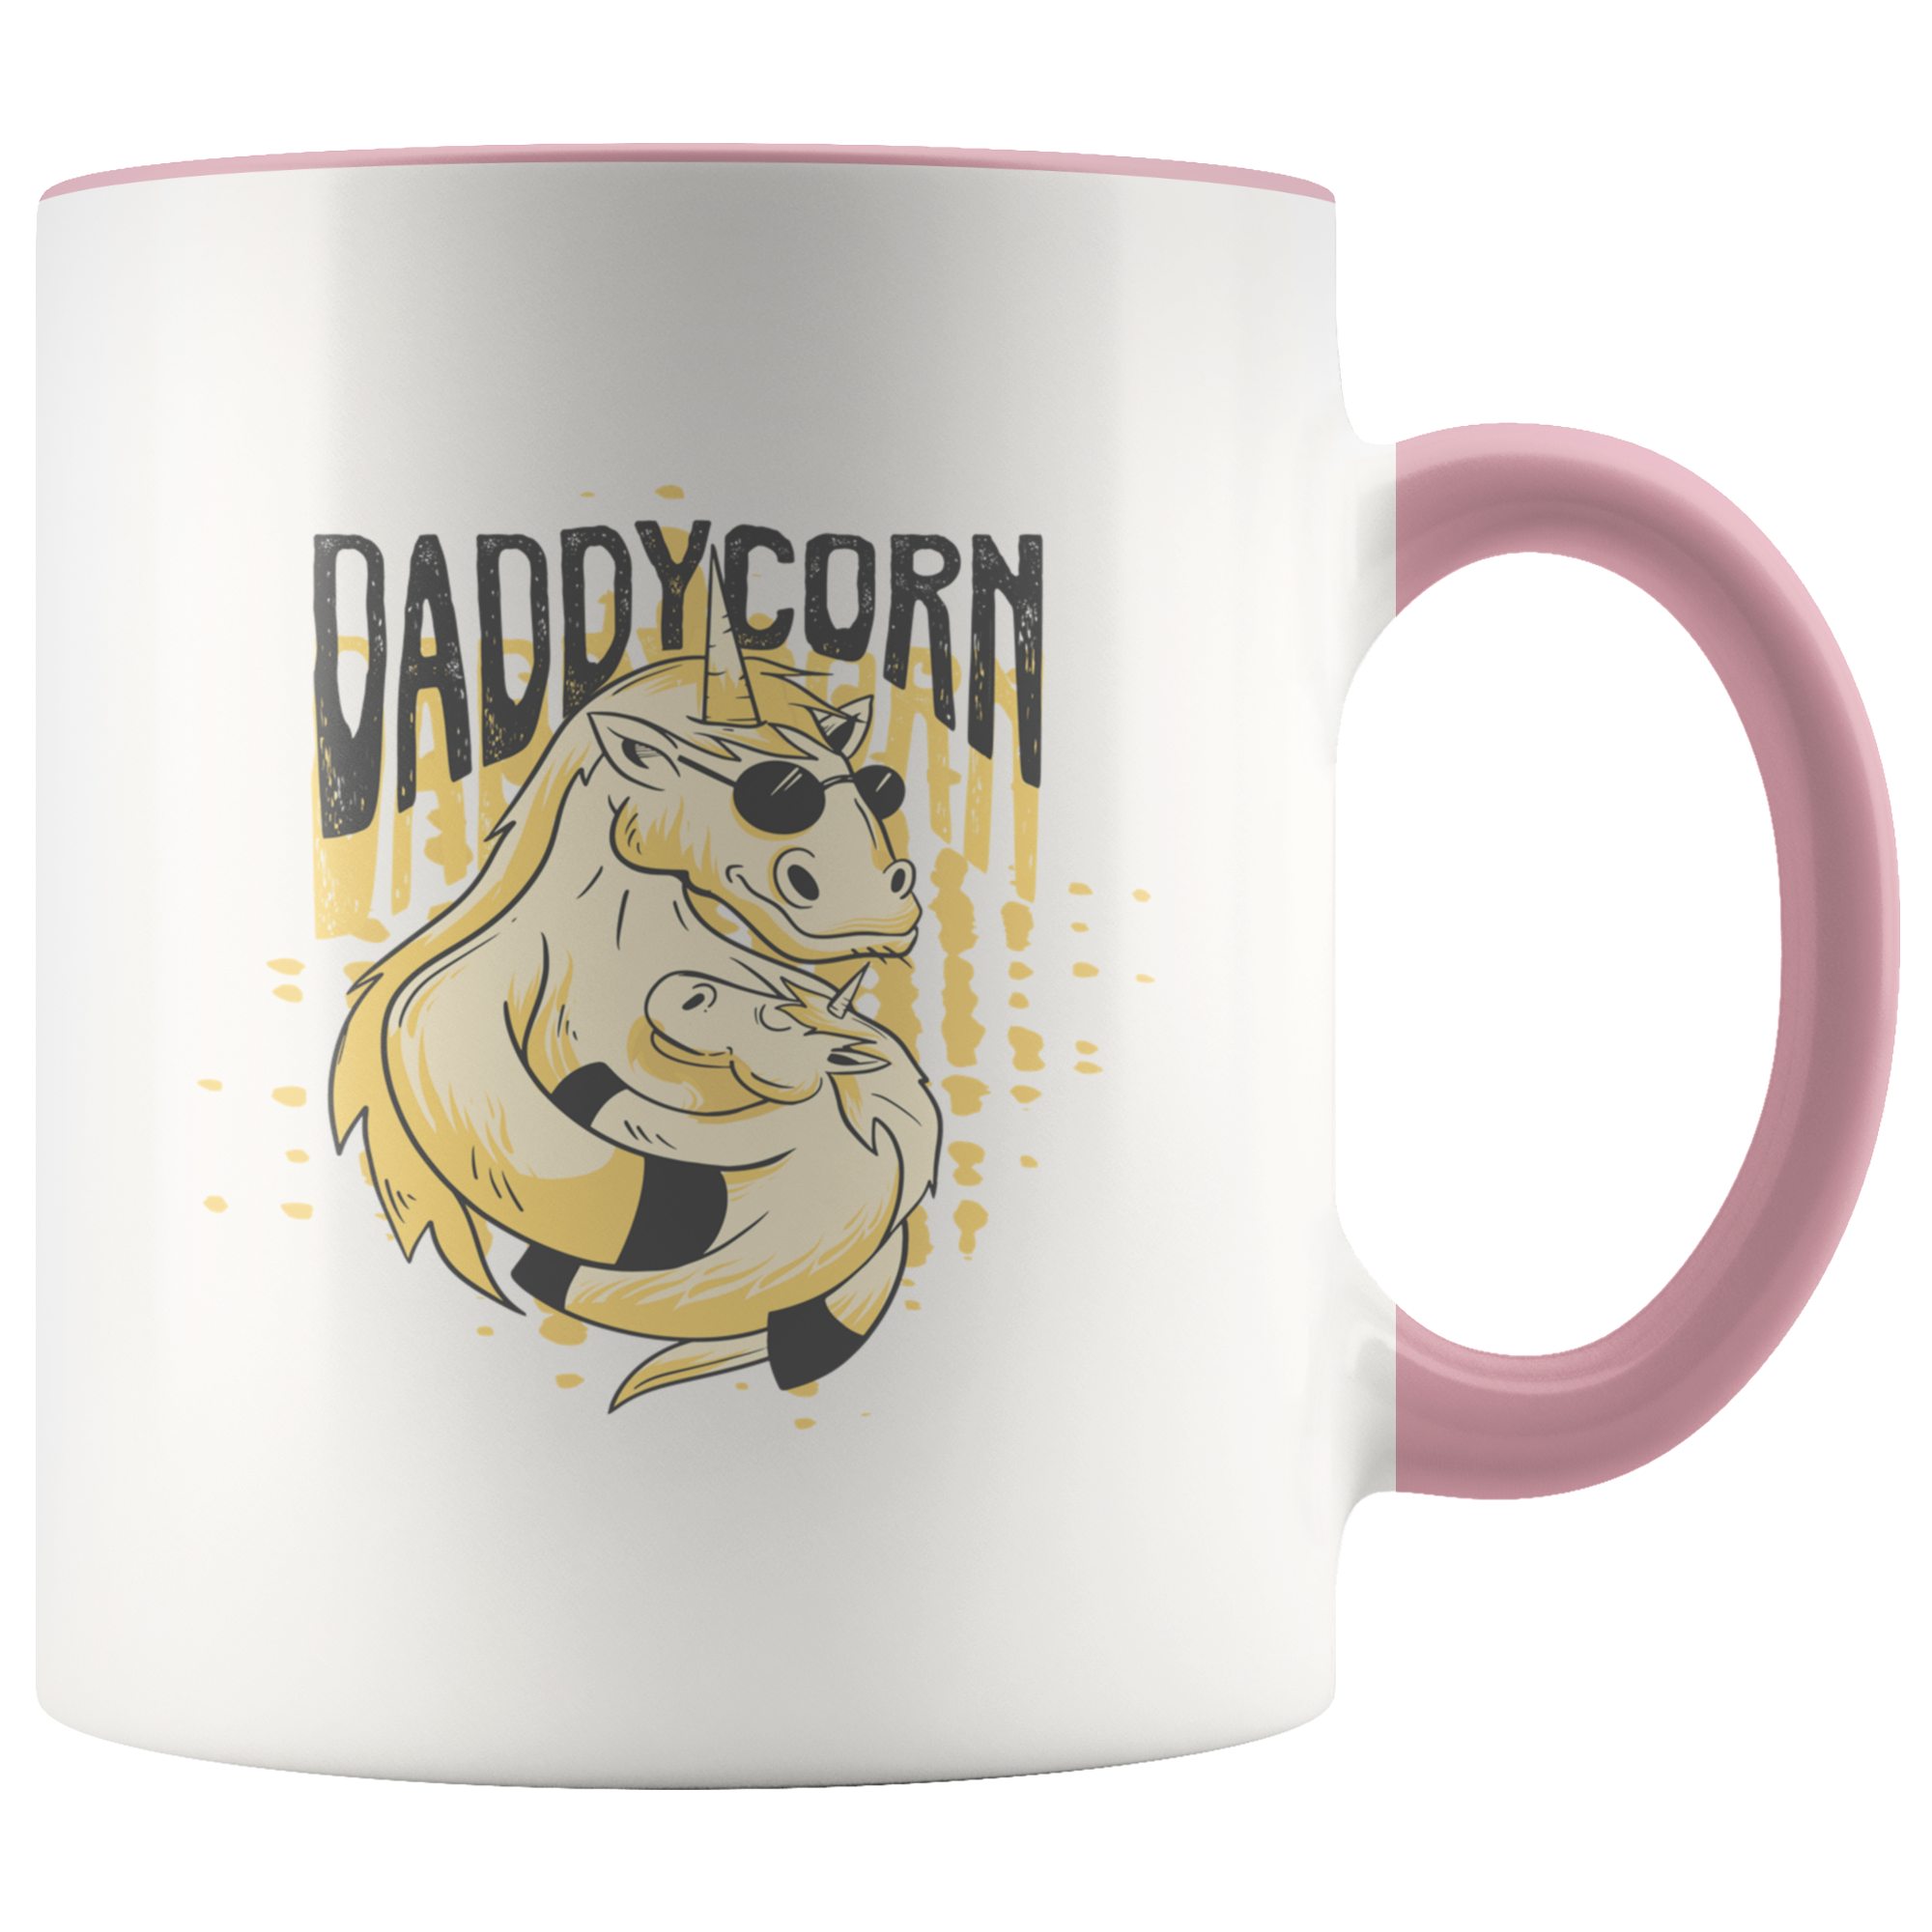 Daddy Corn Mug